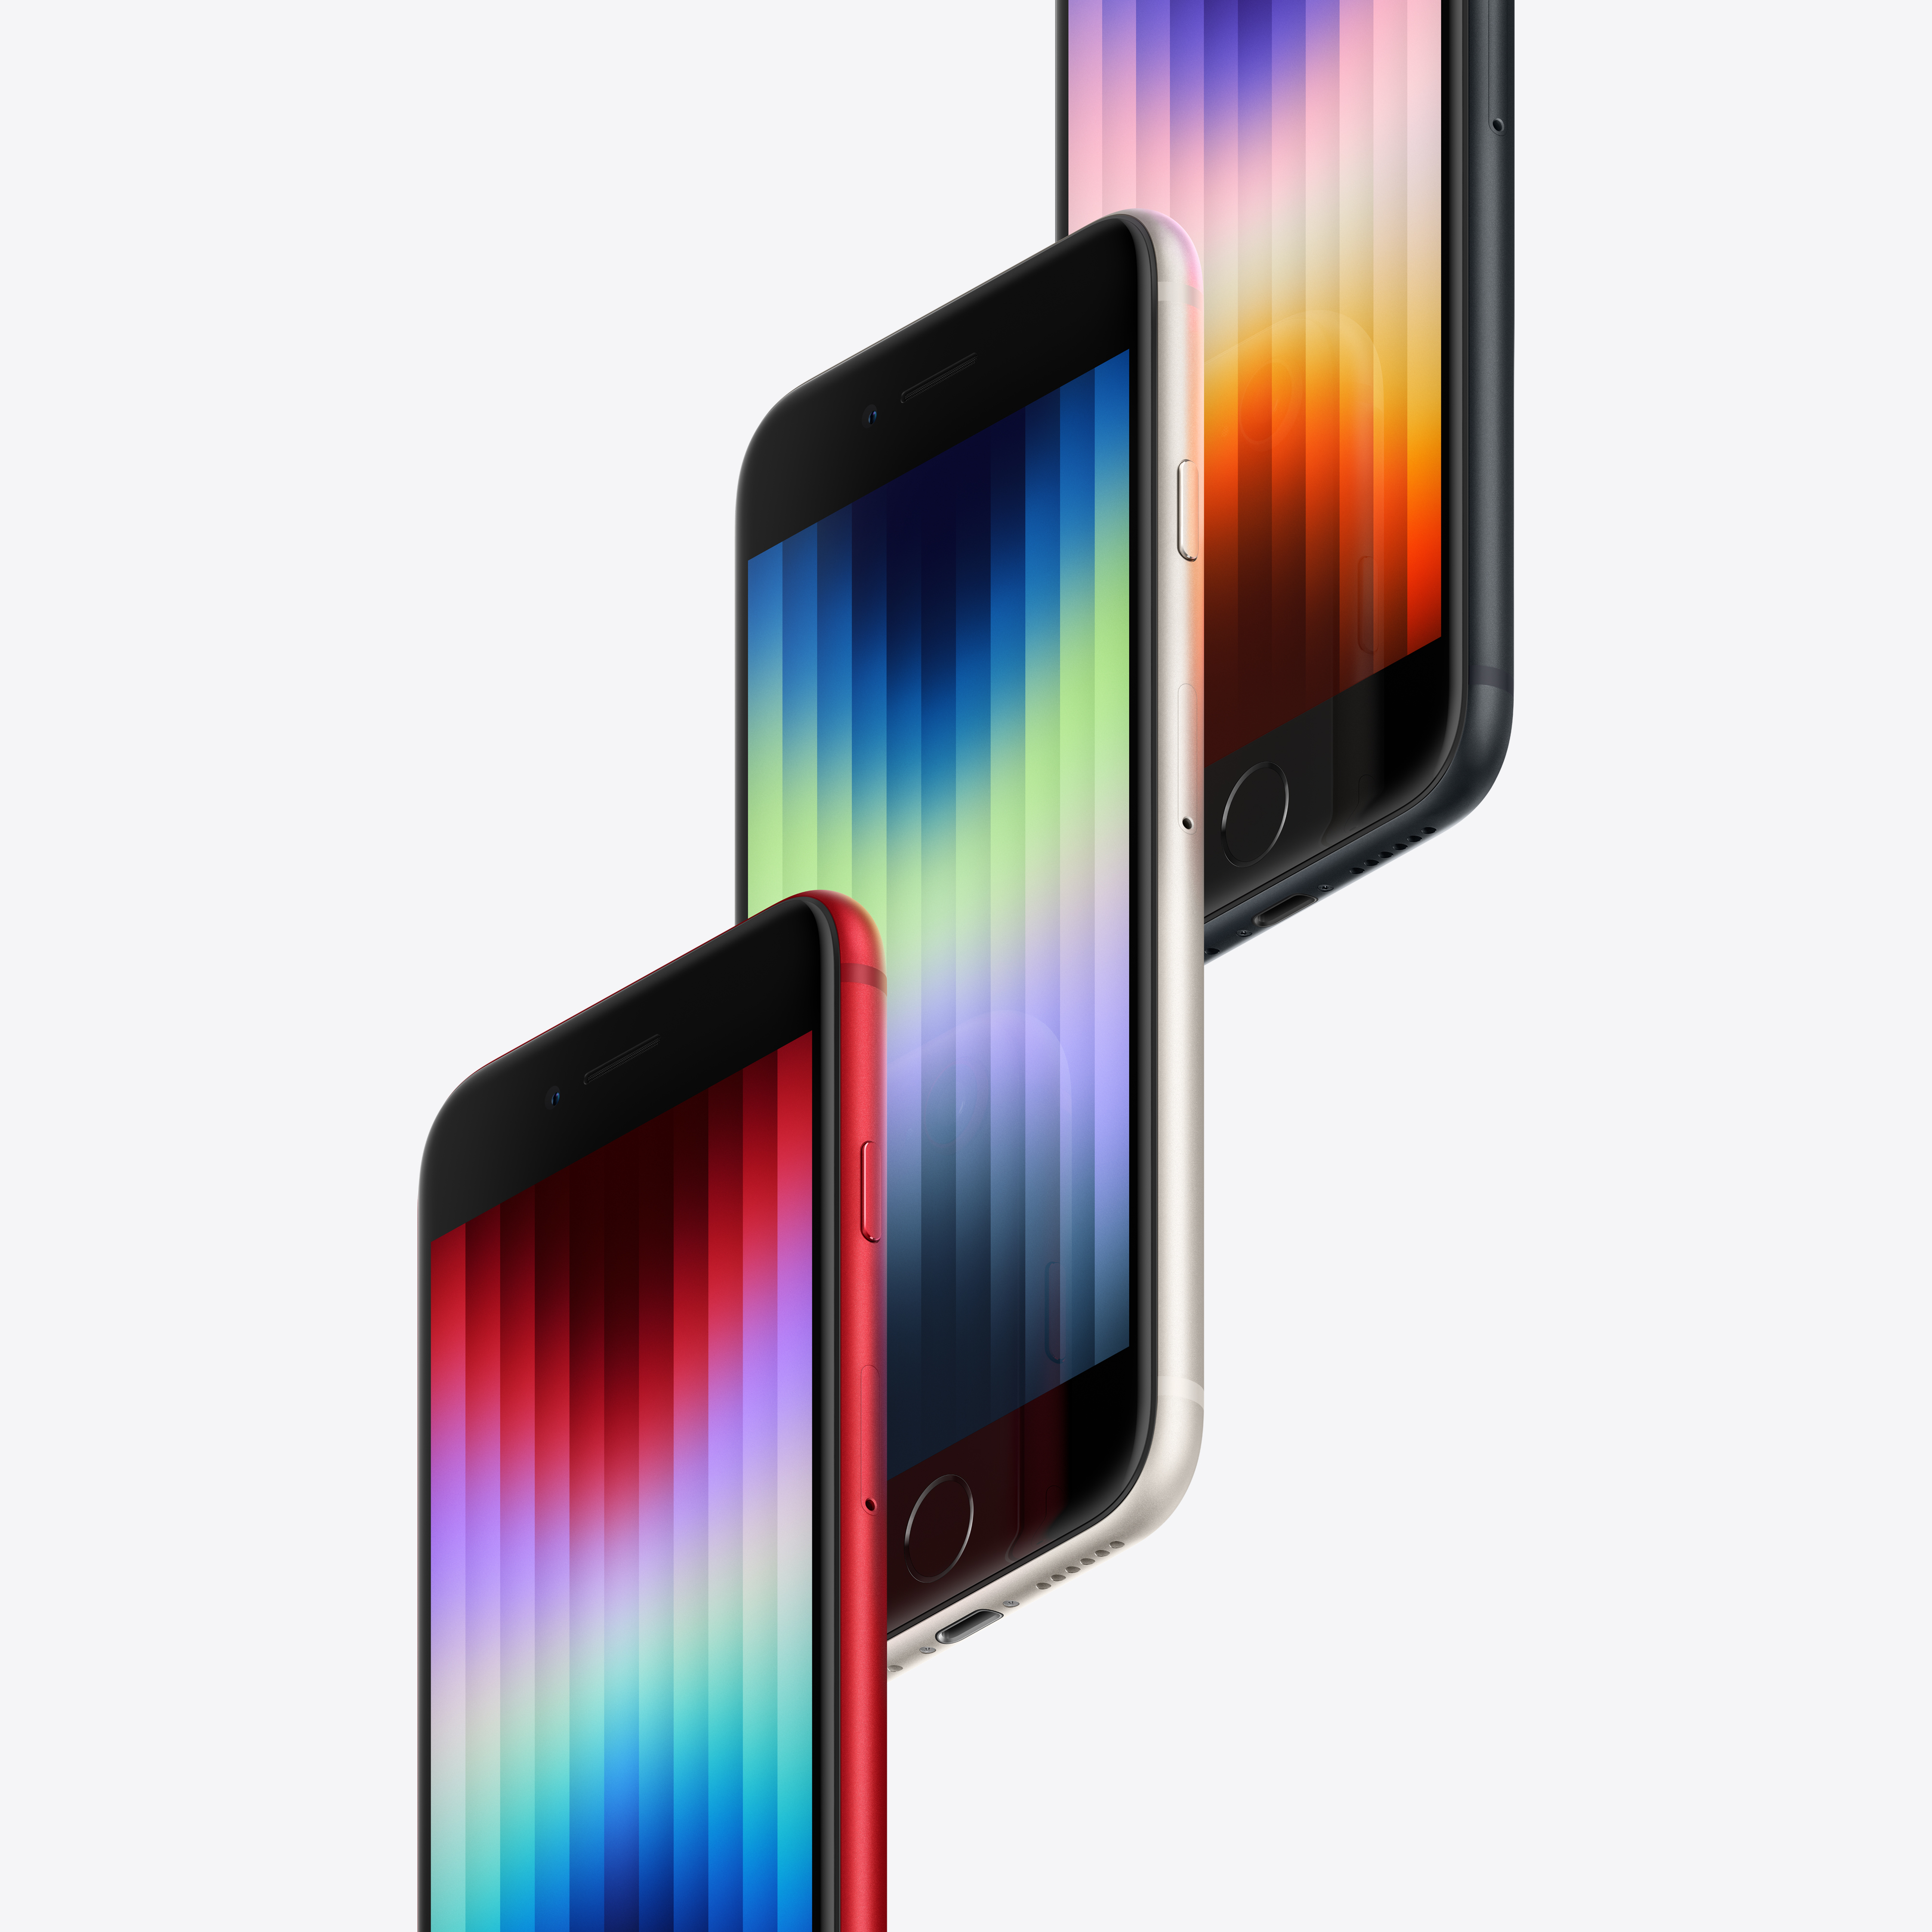 Apple iPhone SE 11,9 cm (4.7") Dual-SIM iOS 15 5G 64 GB Schwarz